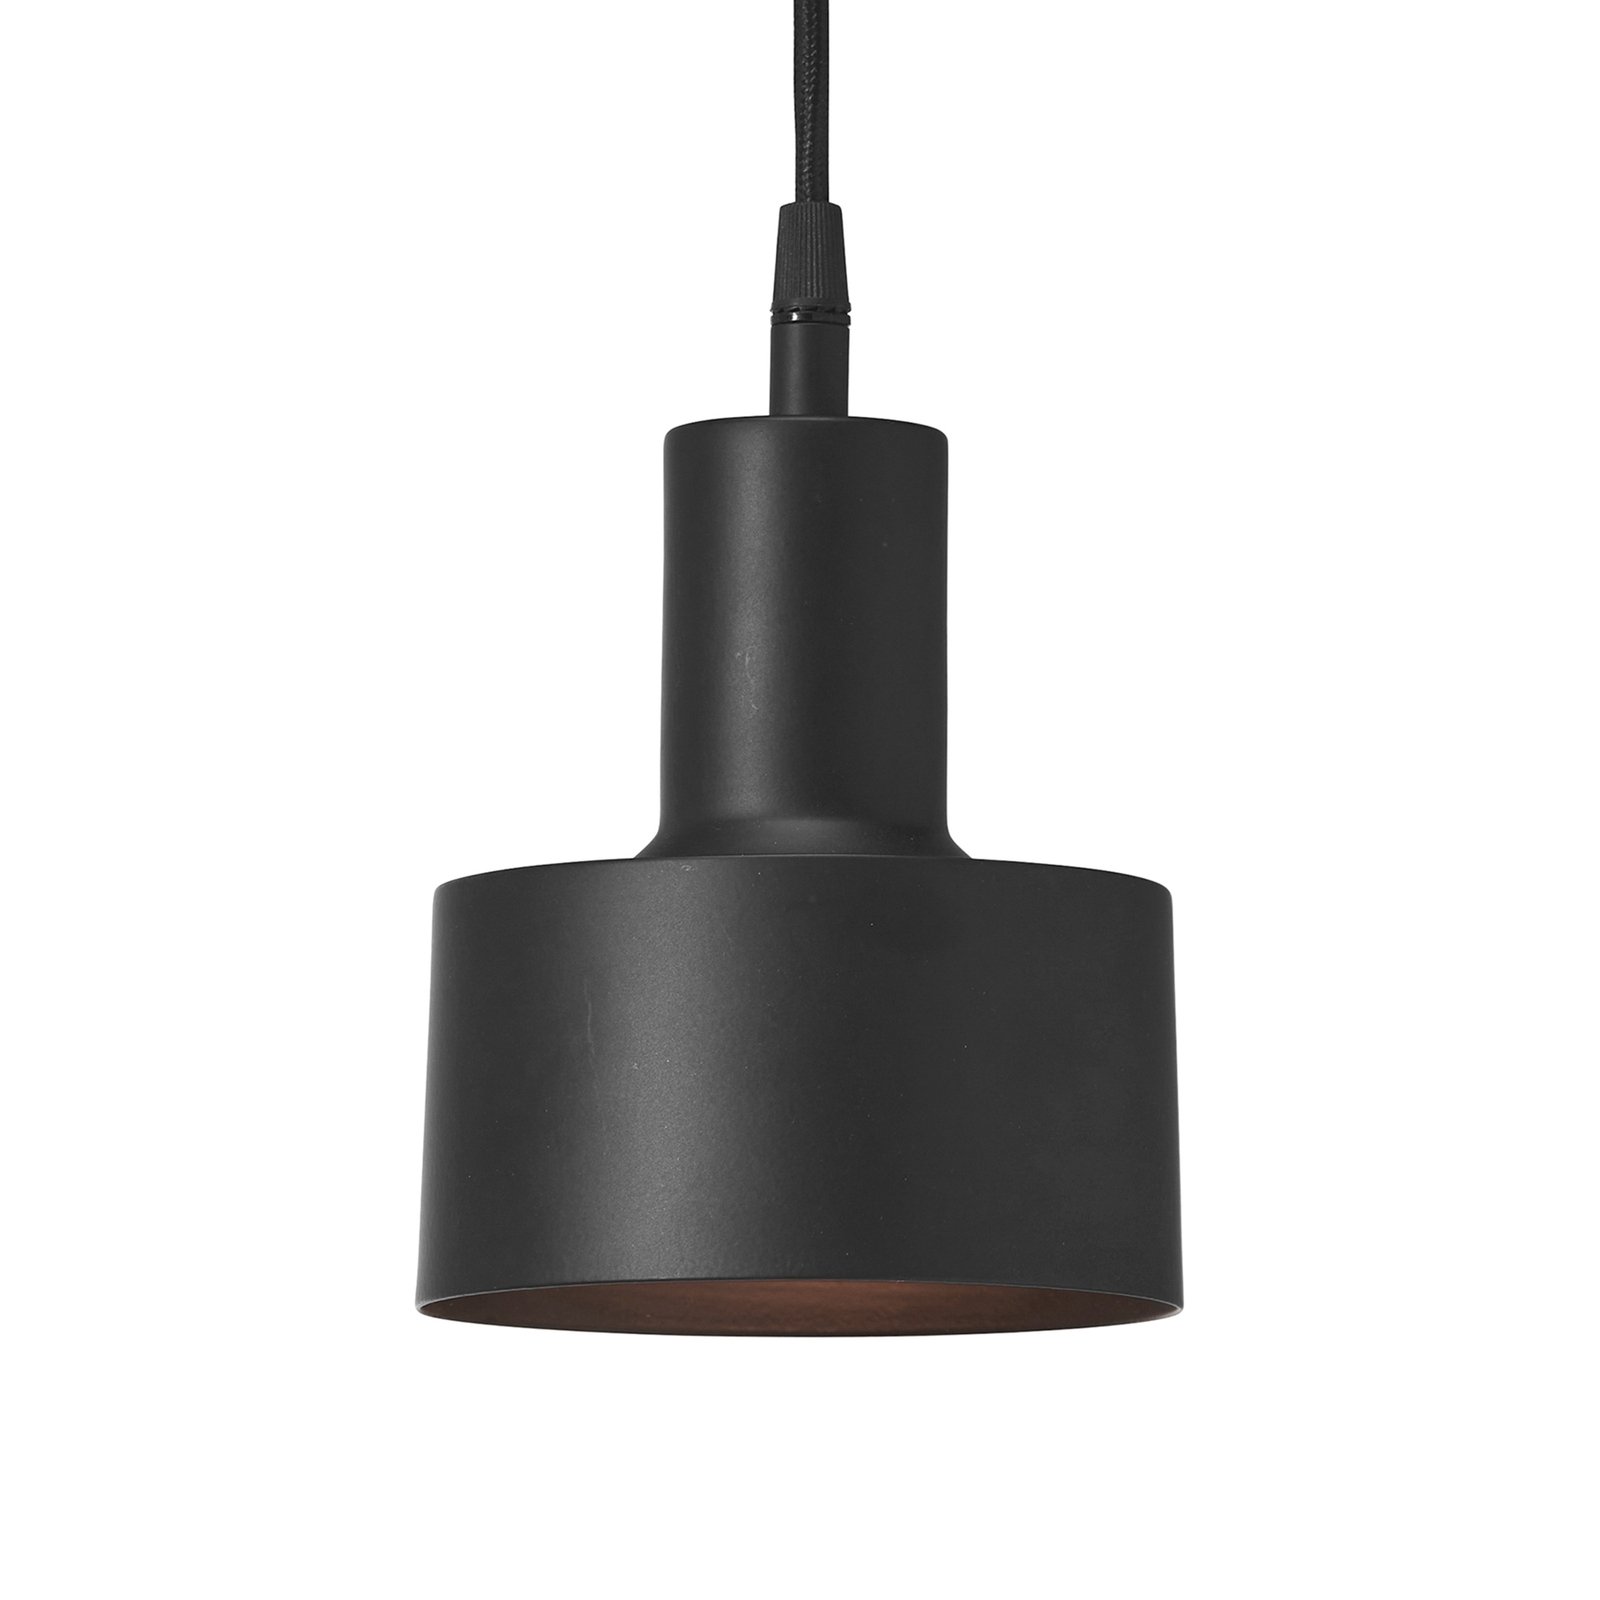 PR Home Solo Small hanglamp Ø13cm mat zwart